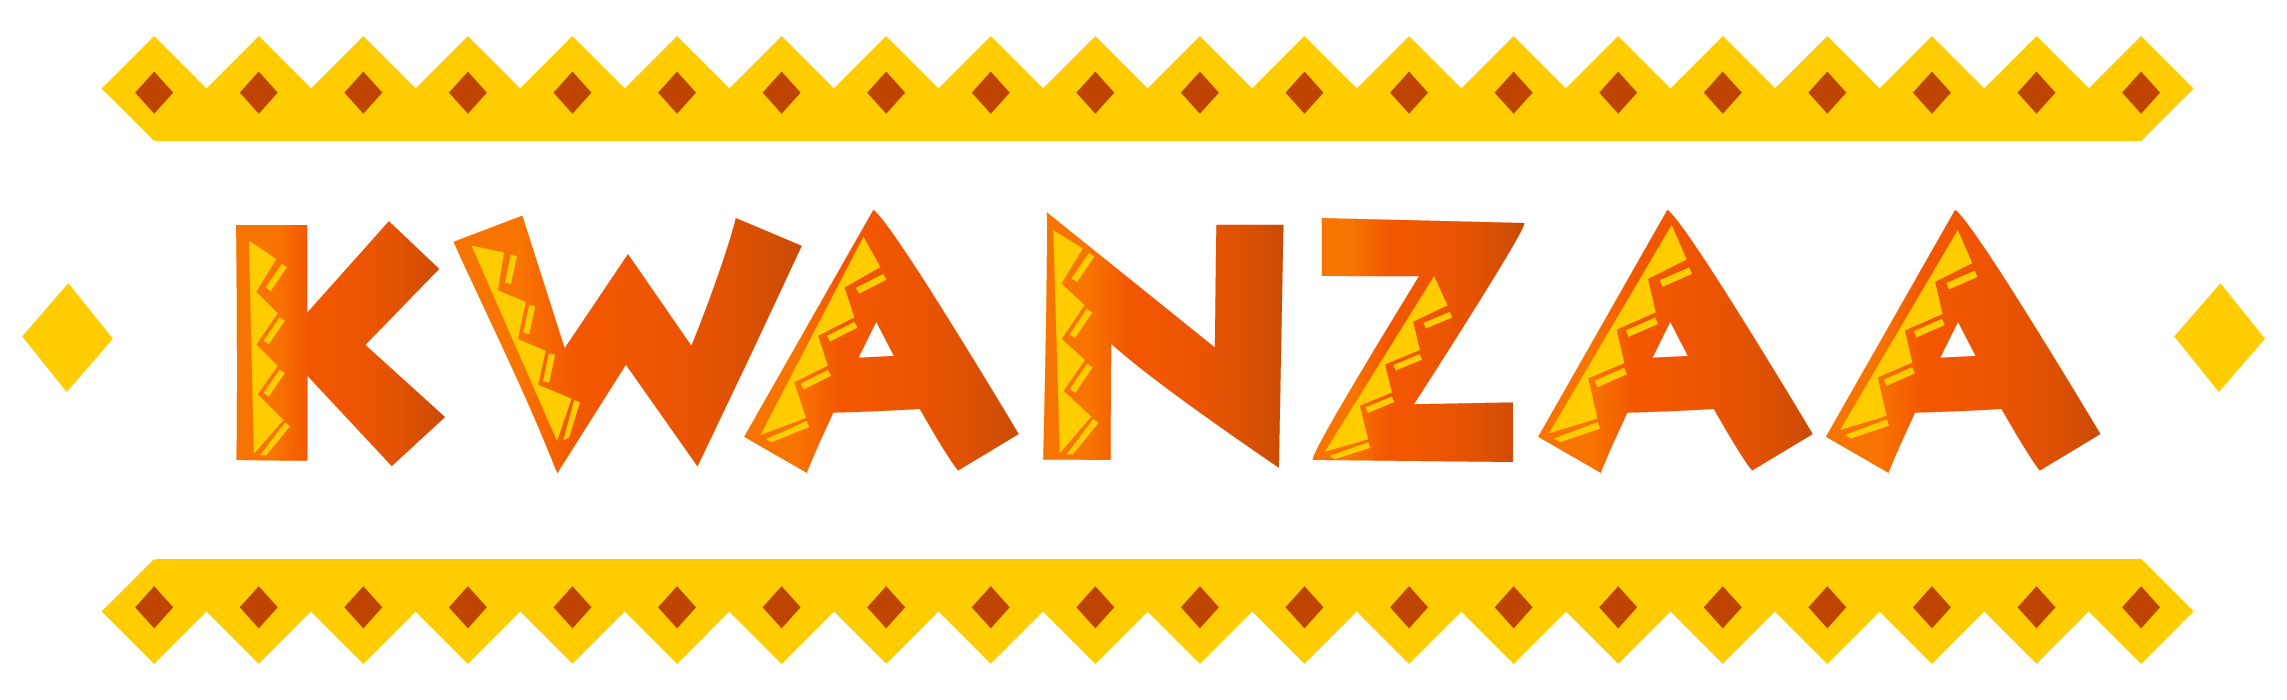 Kwanzaa Decorative Banner